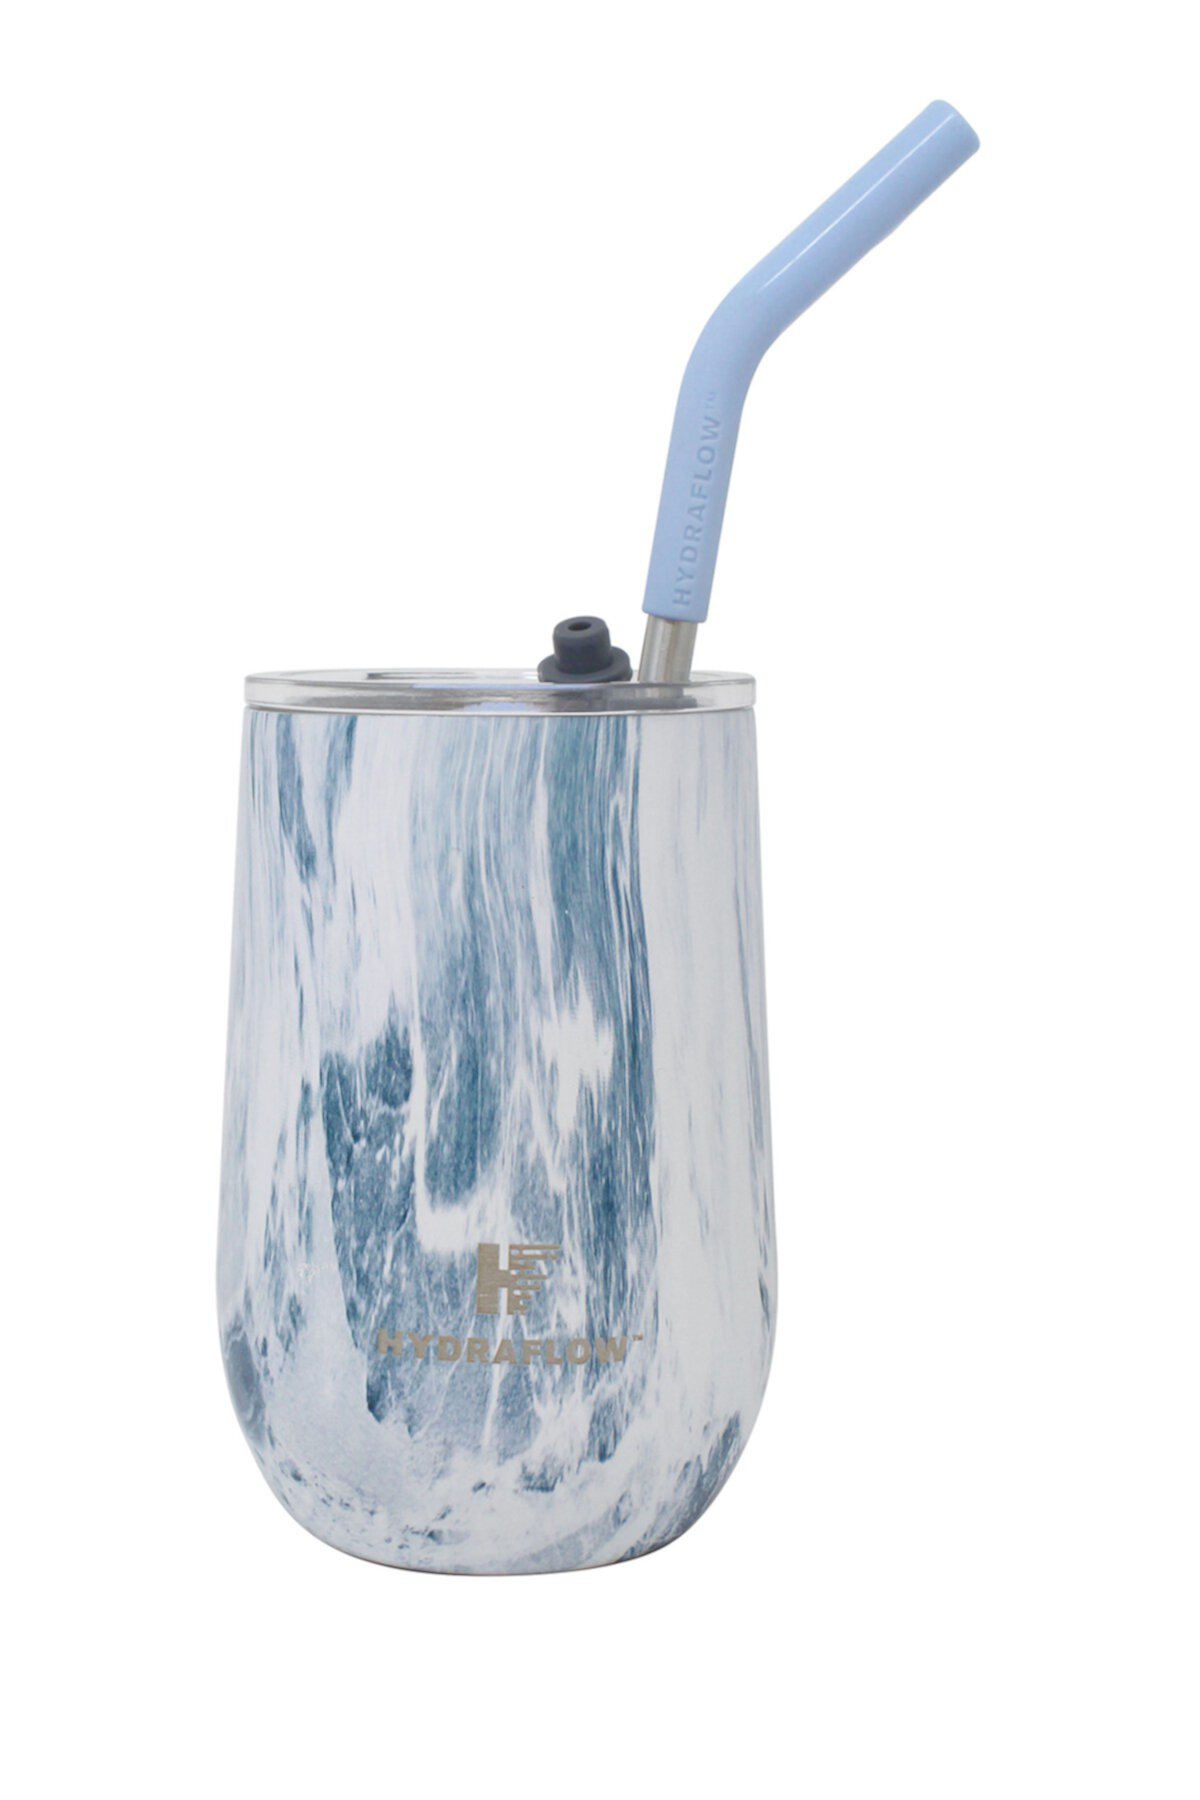 Hydraflow SOUL 14oz Стакан для вина с двойными стенками из нержавеющей стали - Синий мрамор Gourmet Home